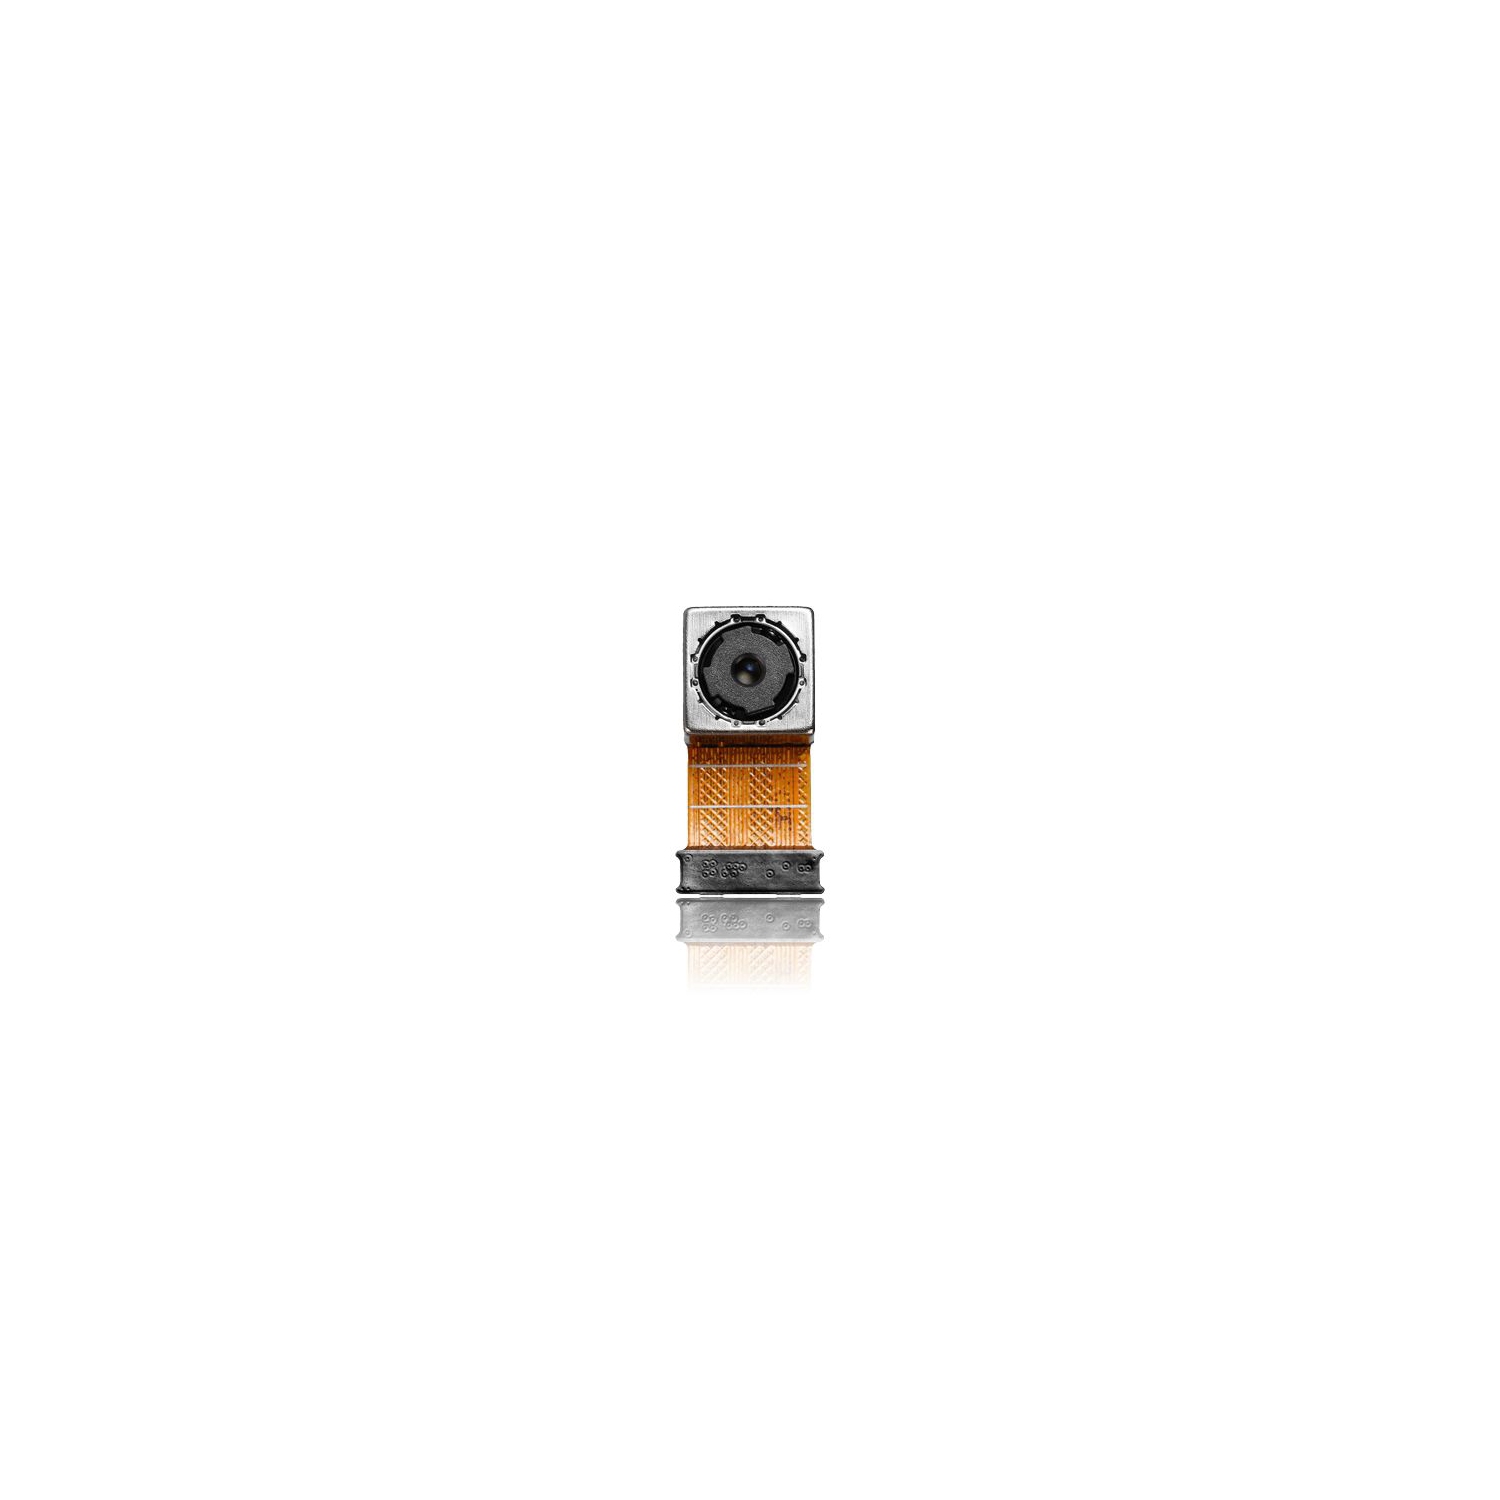 Replacement Back Camera Compatible For Sony Xperia M4 Aqua (E2303 E2306 E2353 E2363)